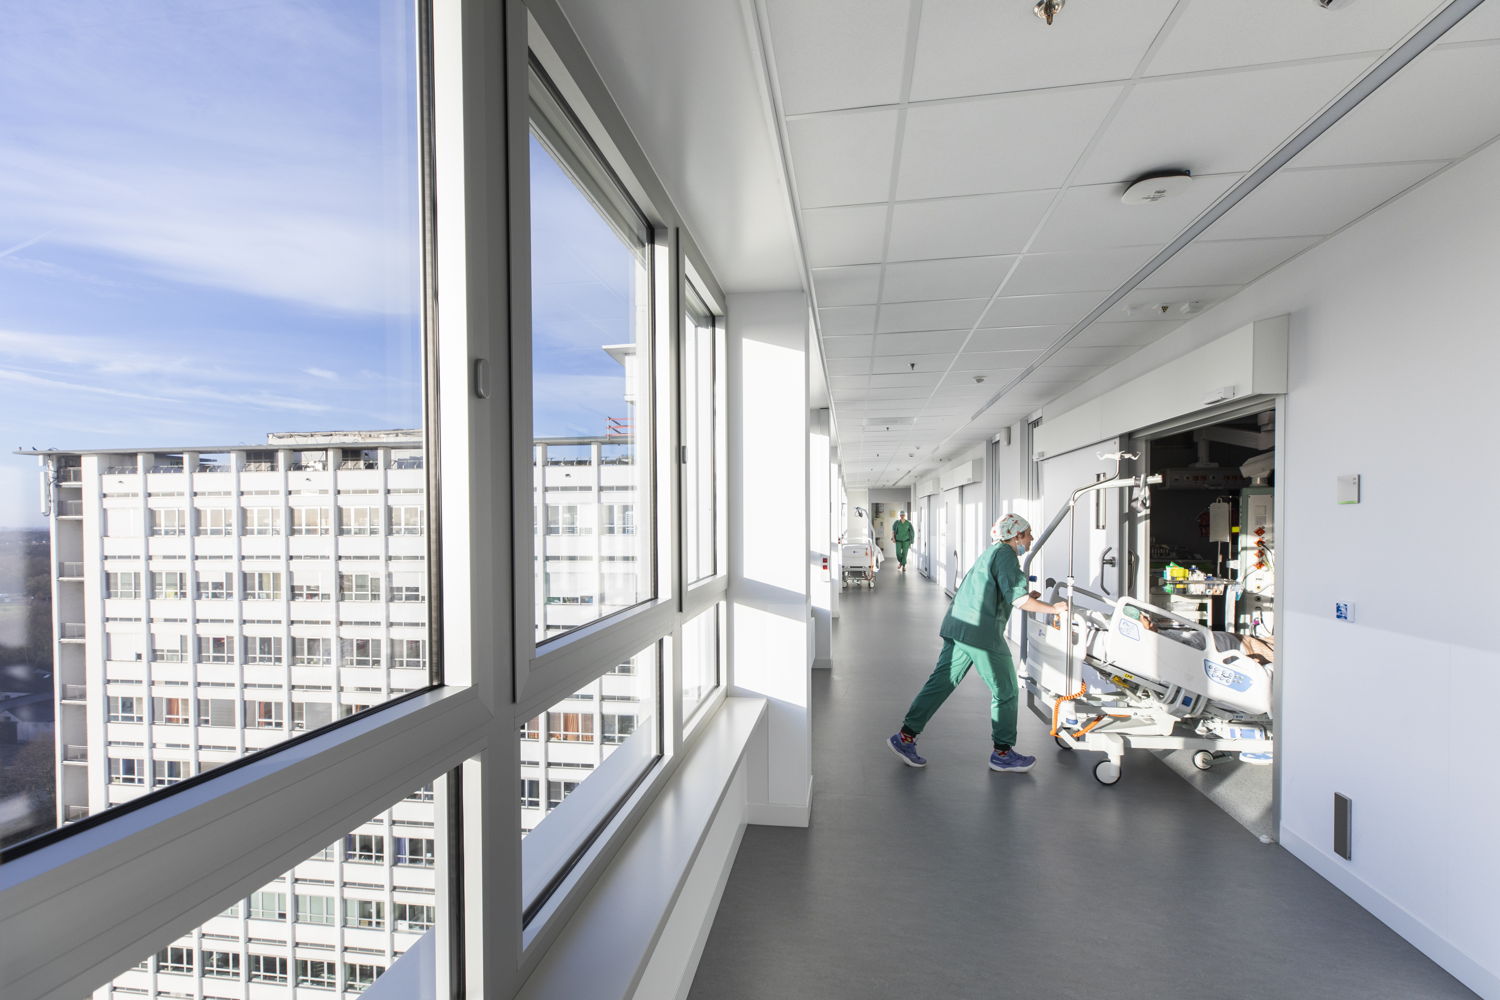 Patiënten gaan via een aparte gang naar de operatiezalen in ZNA Middelheim. Zo komen ze pas op het laatste moment in de operatiesfeer. (Foto: ZNA / Dirk Kerstens)